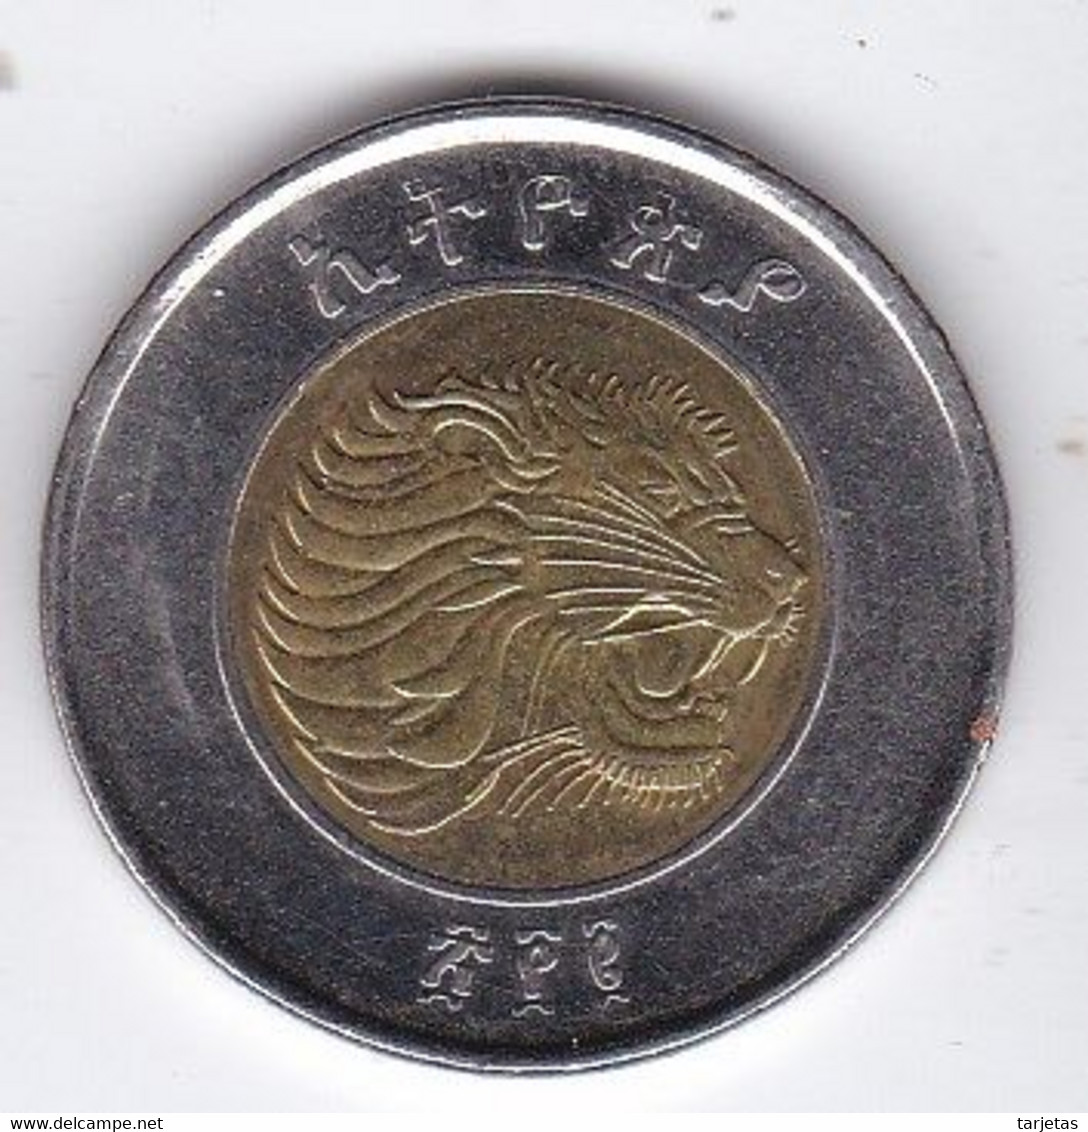 MONEDA DE ETIOPIA DE 1BIRR DEL AÑO 2002  (COIN) - Ethiopia